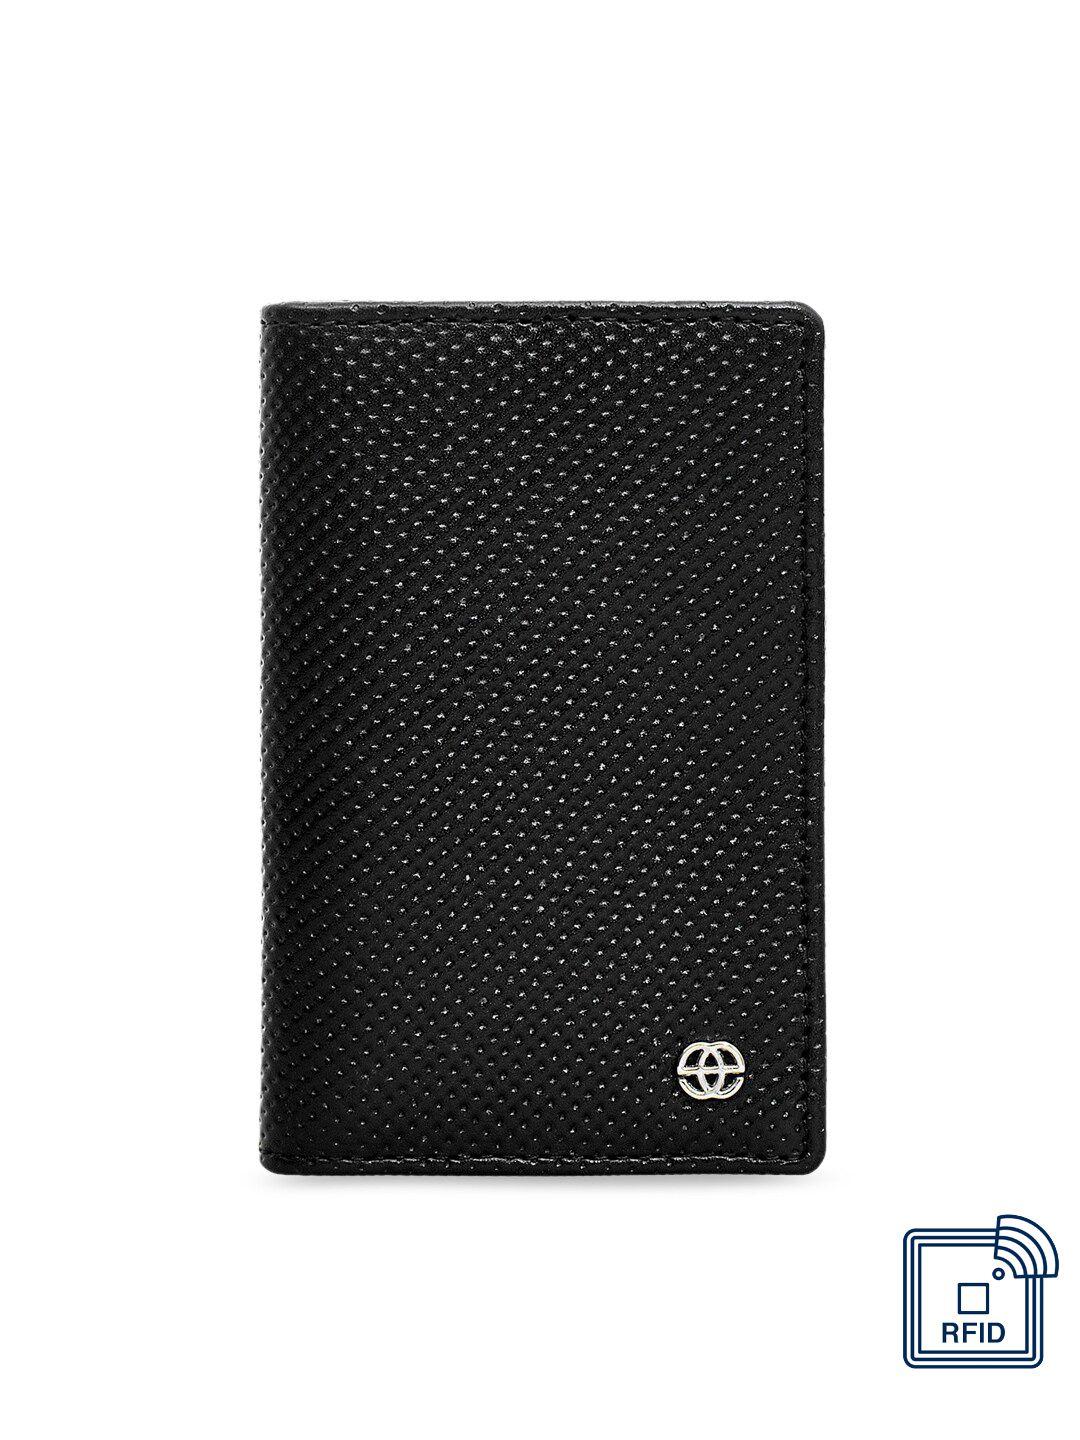 eske unisex black geometric textured leather card holder